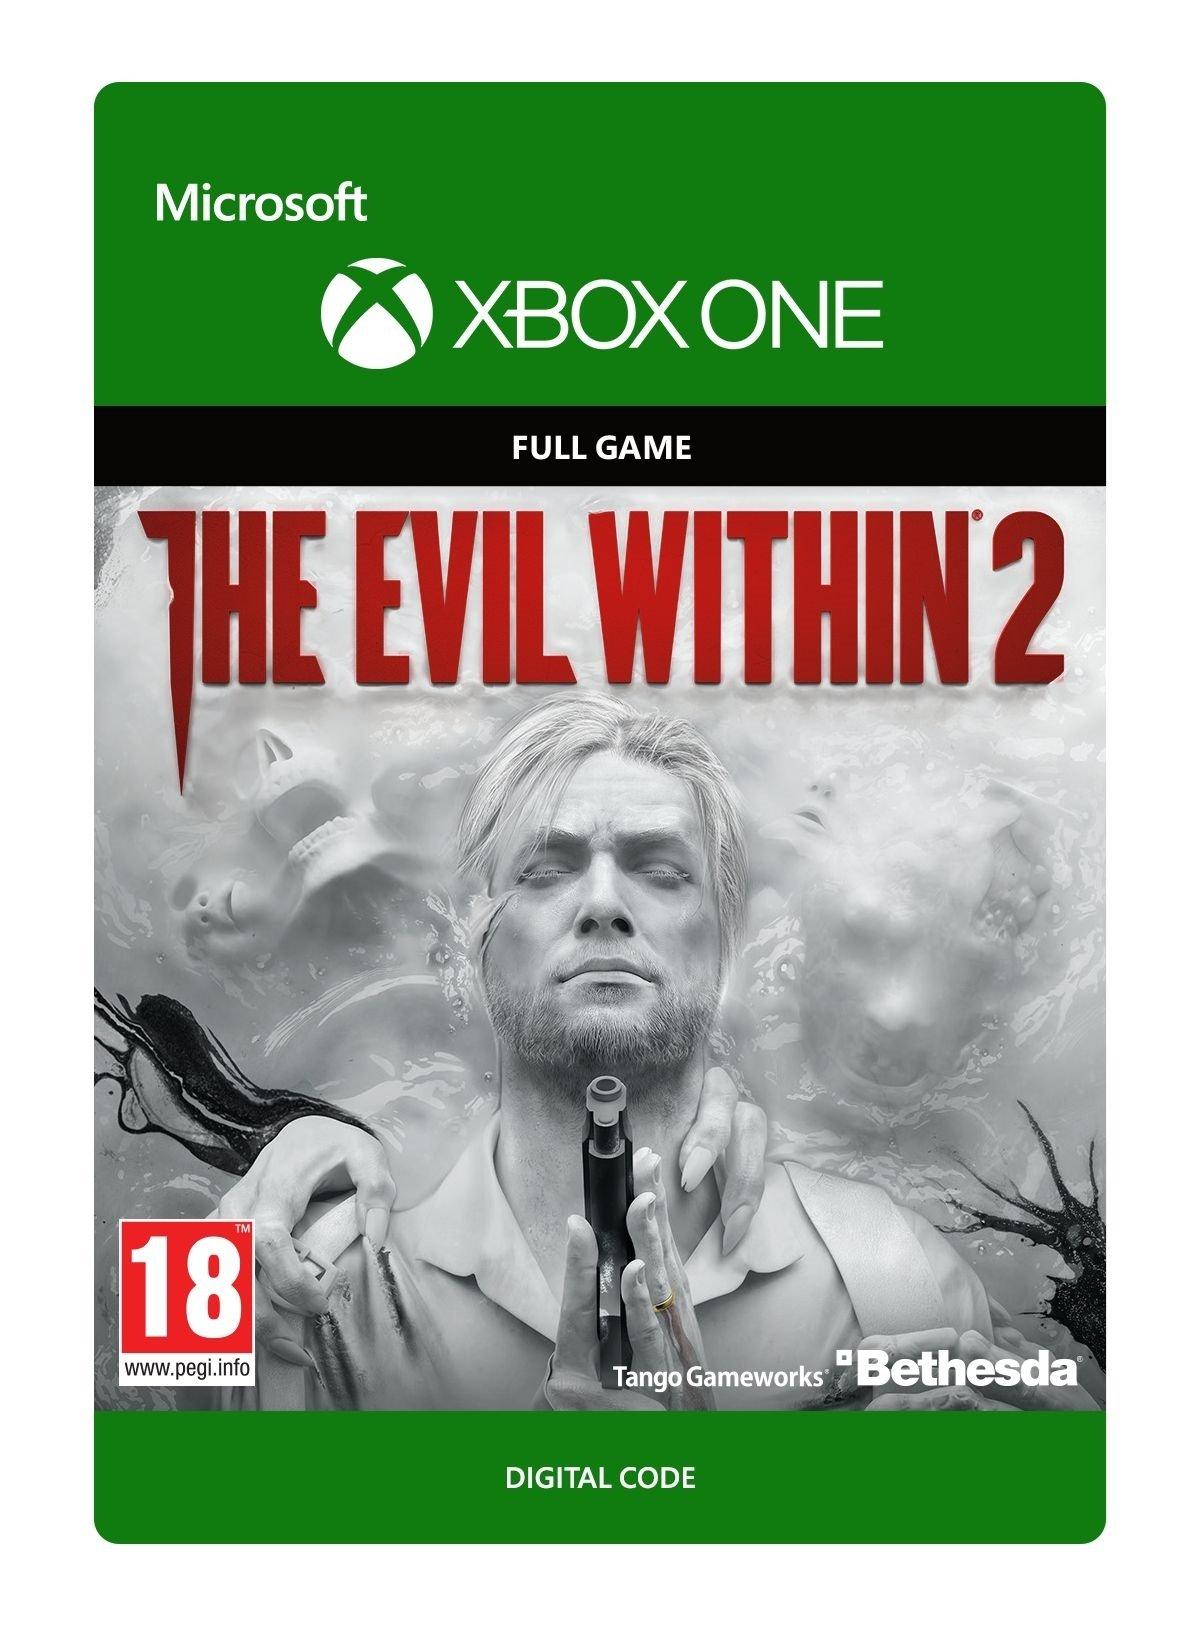 The Evil Within 2 - Xbox One - Game | G3Q-00368 (df9d5a58-3b2b-432c-b994-bd5dbcae9672)